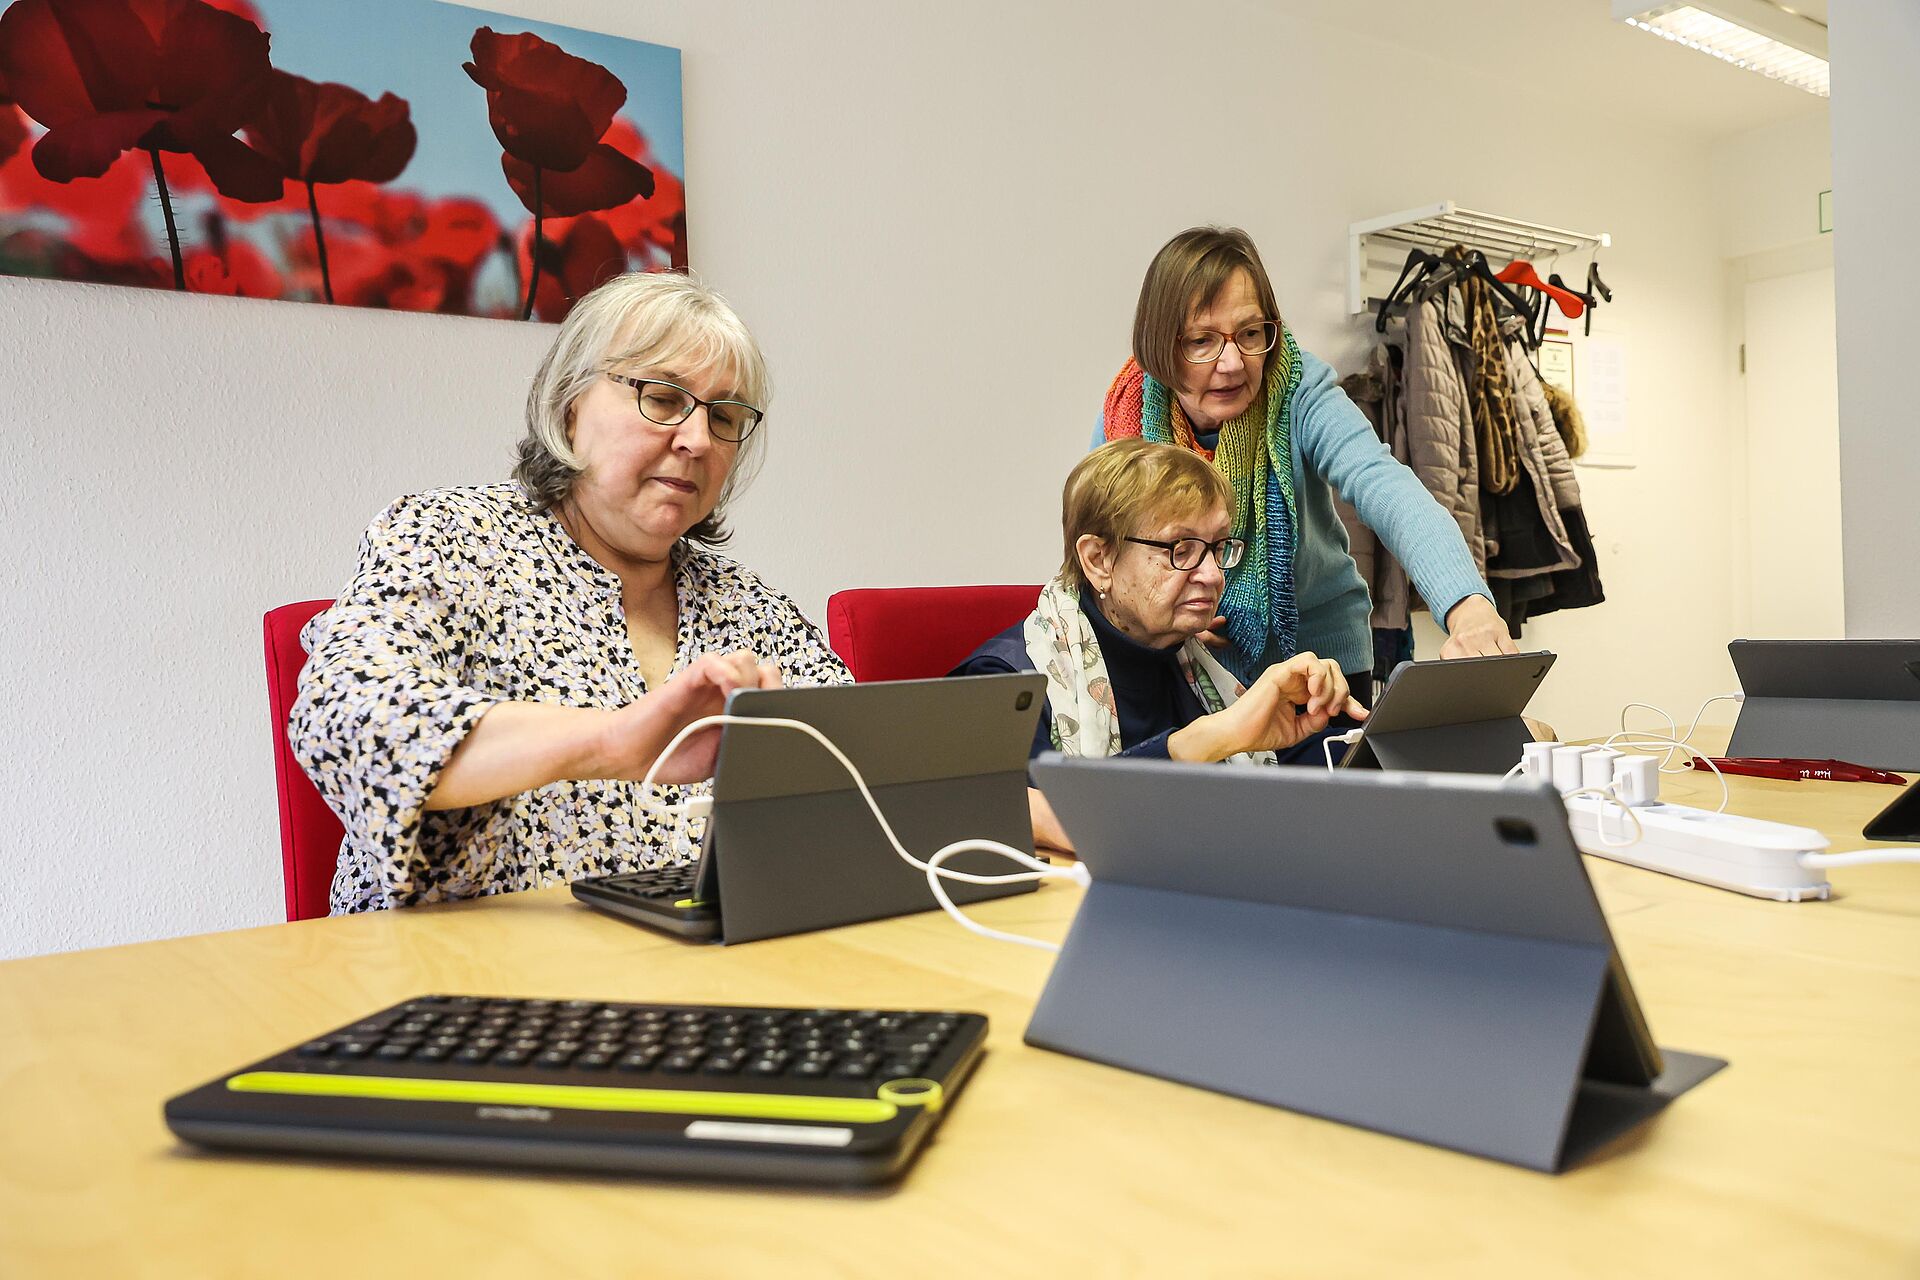 Zwei Frauen sitzen an einem Tisch vor ihren Tablet-PCs und eine dritte Frau erklärt etwas zum Umgang mit dem technischen Gerät